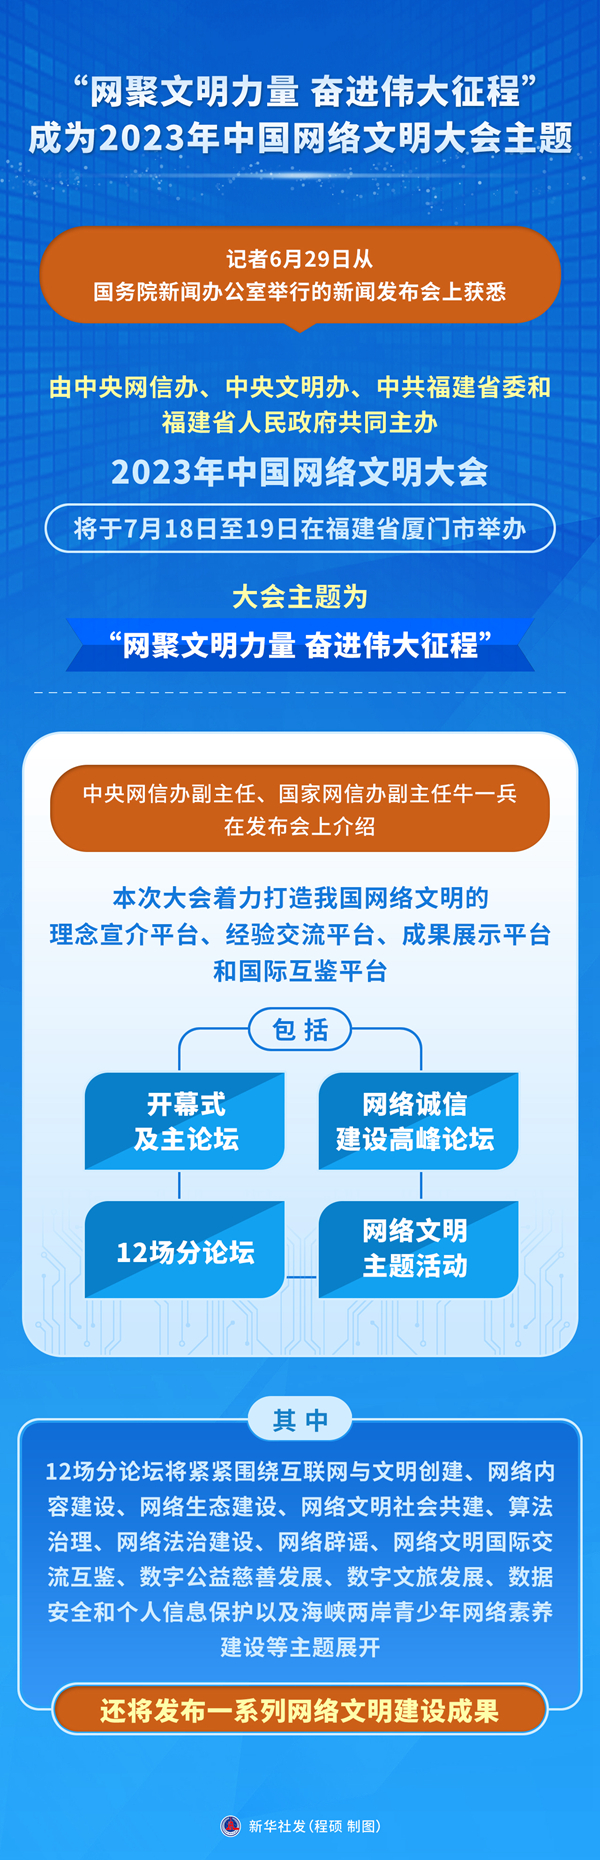 “网聚文明力量 奋进伟大征程”成为2023年中国网络文明大会主题